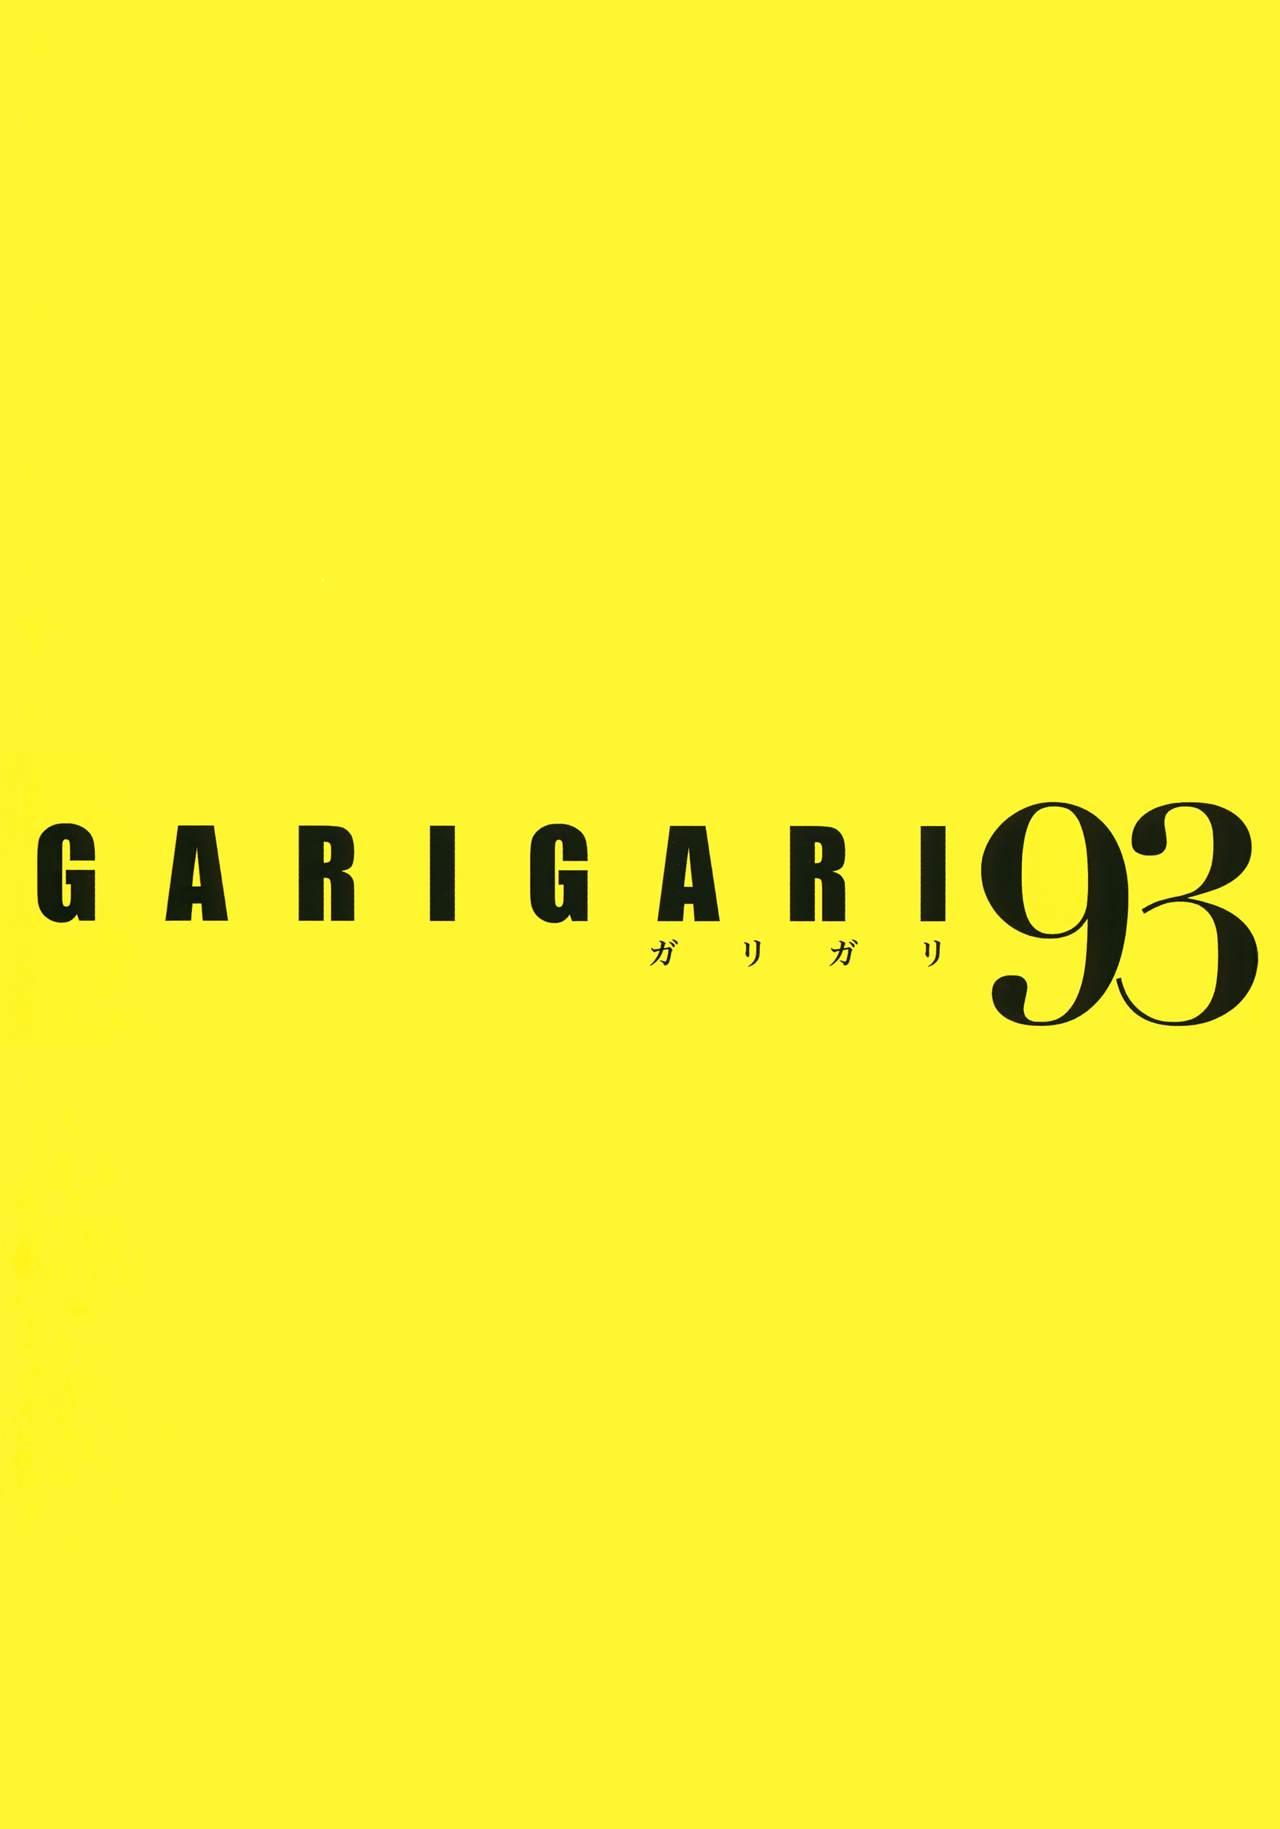 GARIGARI 93 2